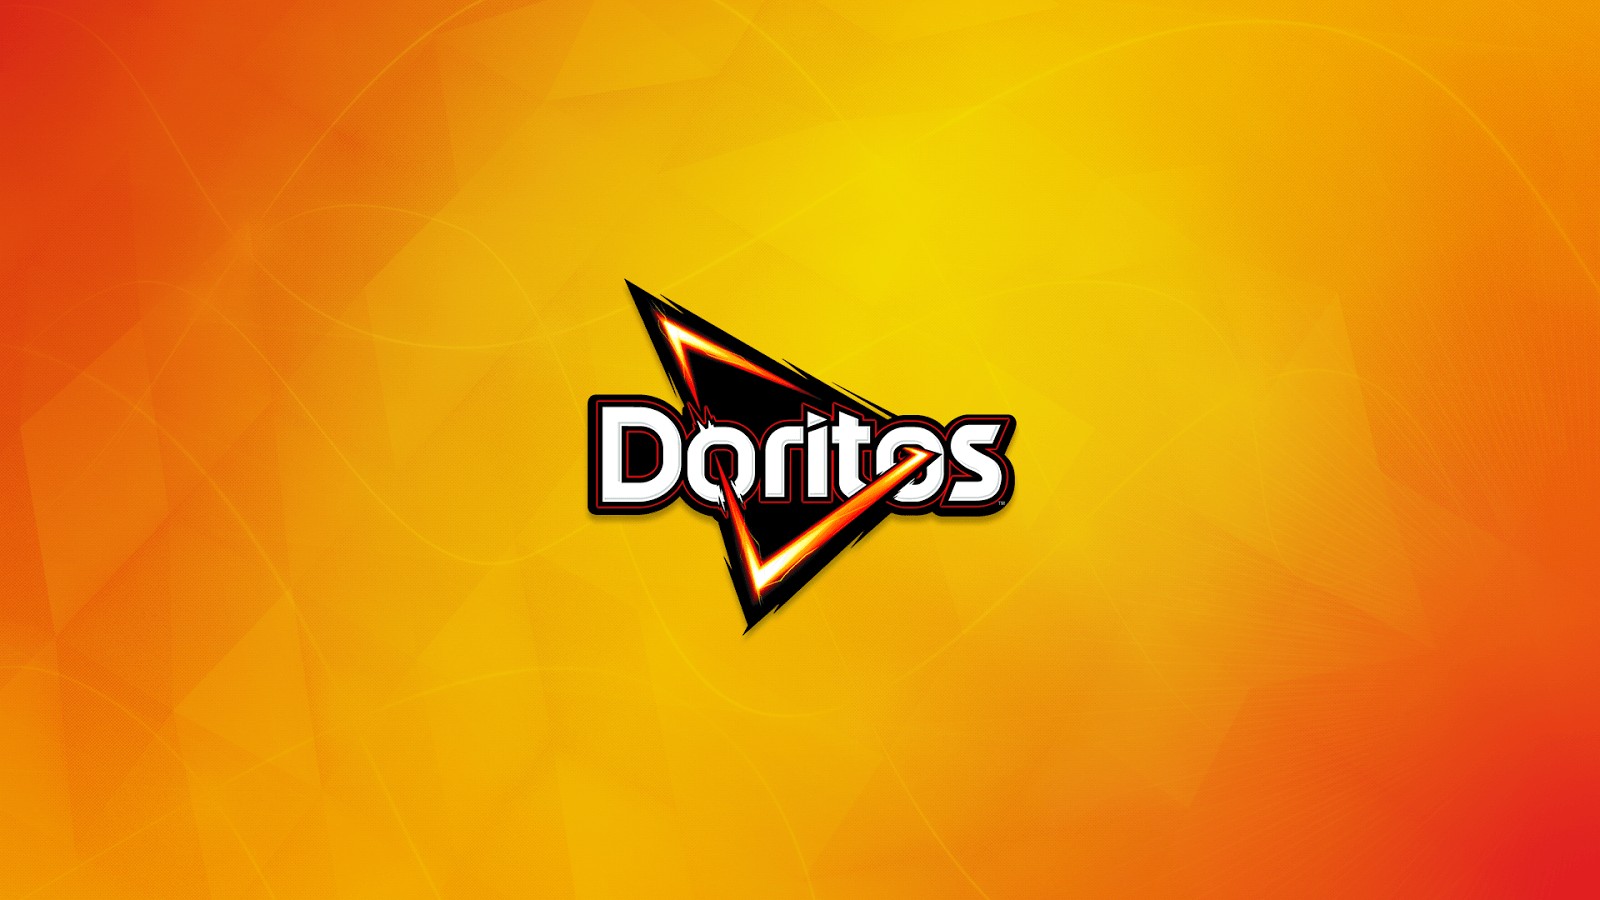 Doritos logo on an orange background - Doritos